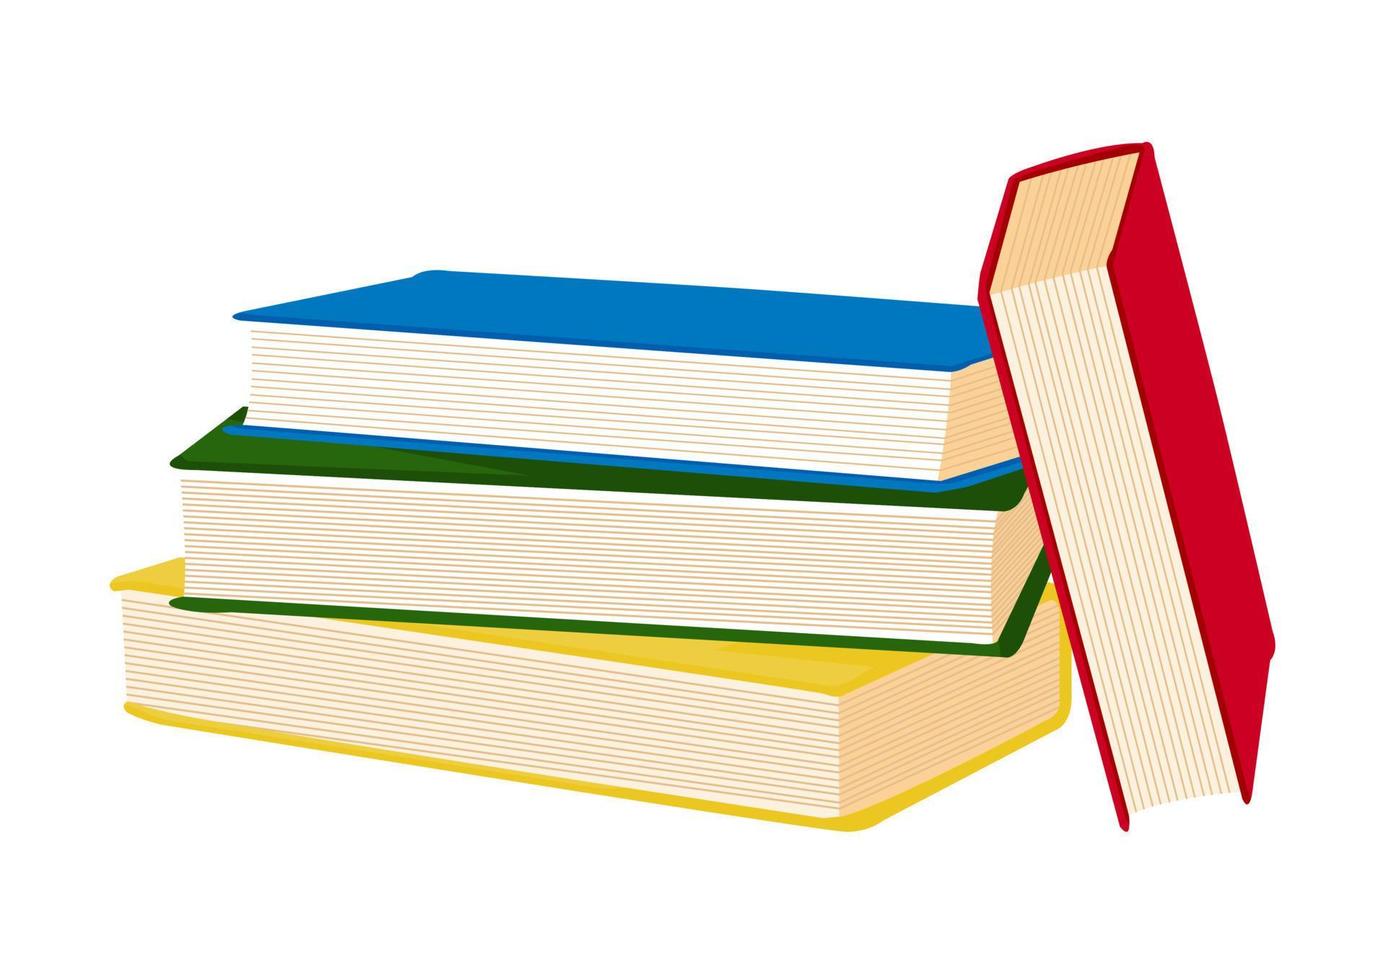 conjunto de cuatro libros aislado sobre un fondo blanco. ilustración vectorial de libros de diferentes colores vector